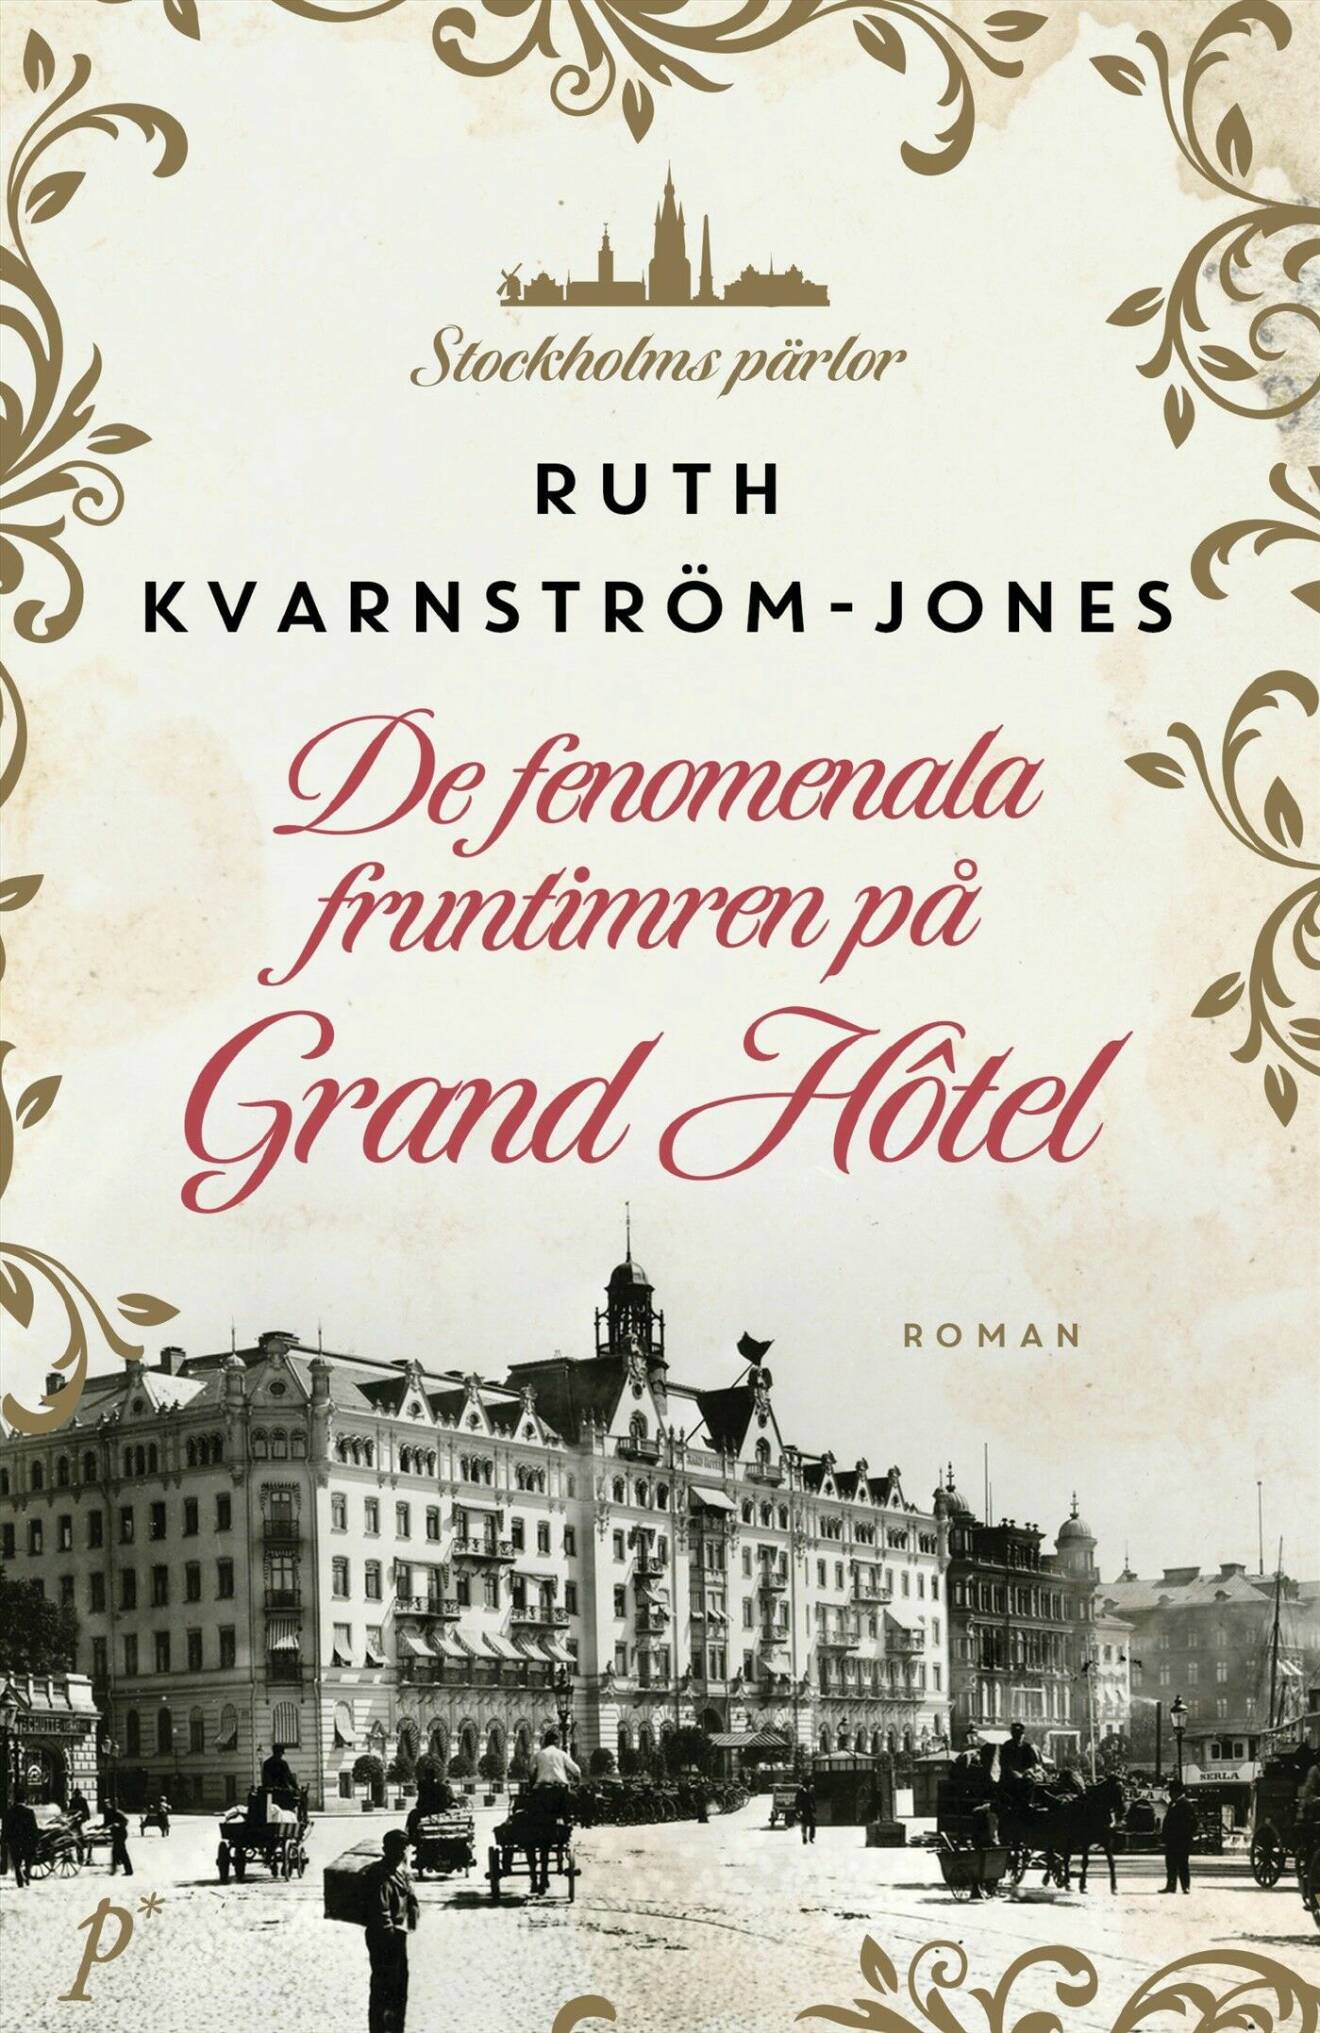 De fenomenala fruntimren på Grand Hôtel av Rut Kvarnström-Jones (Printz).